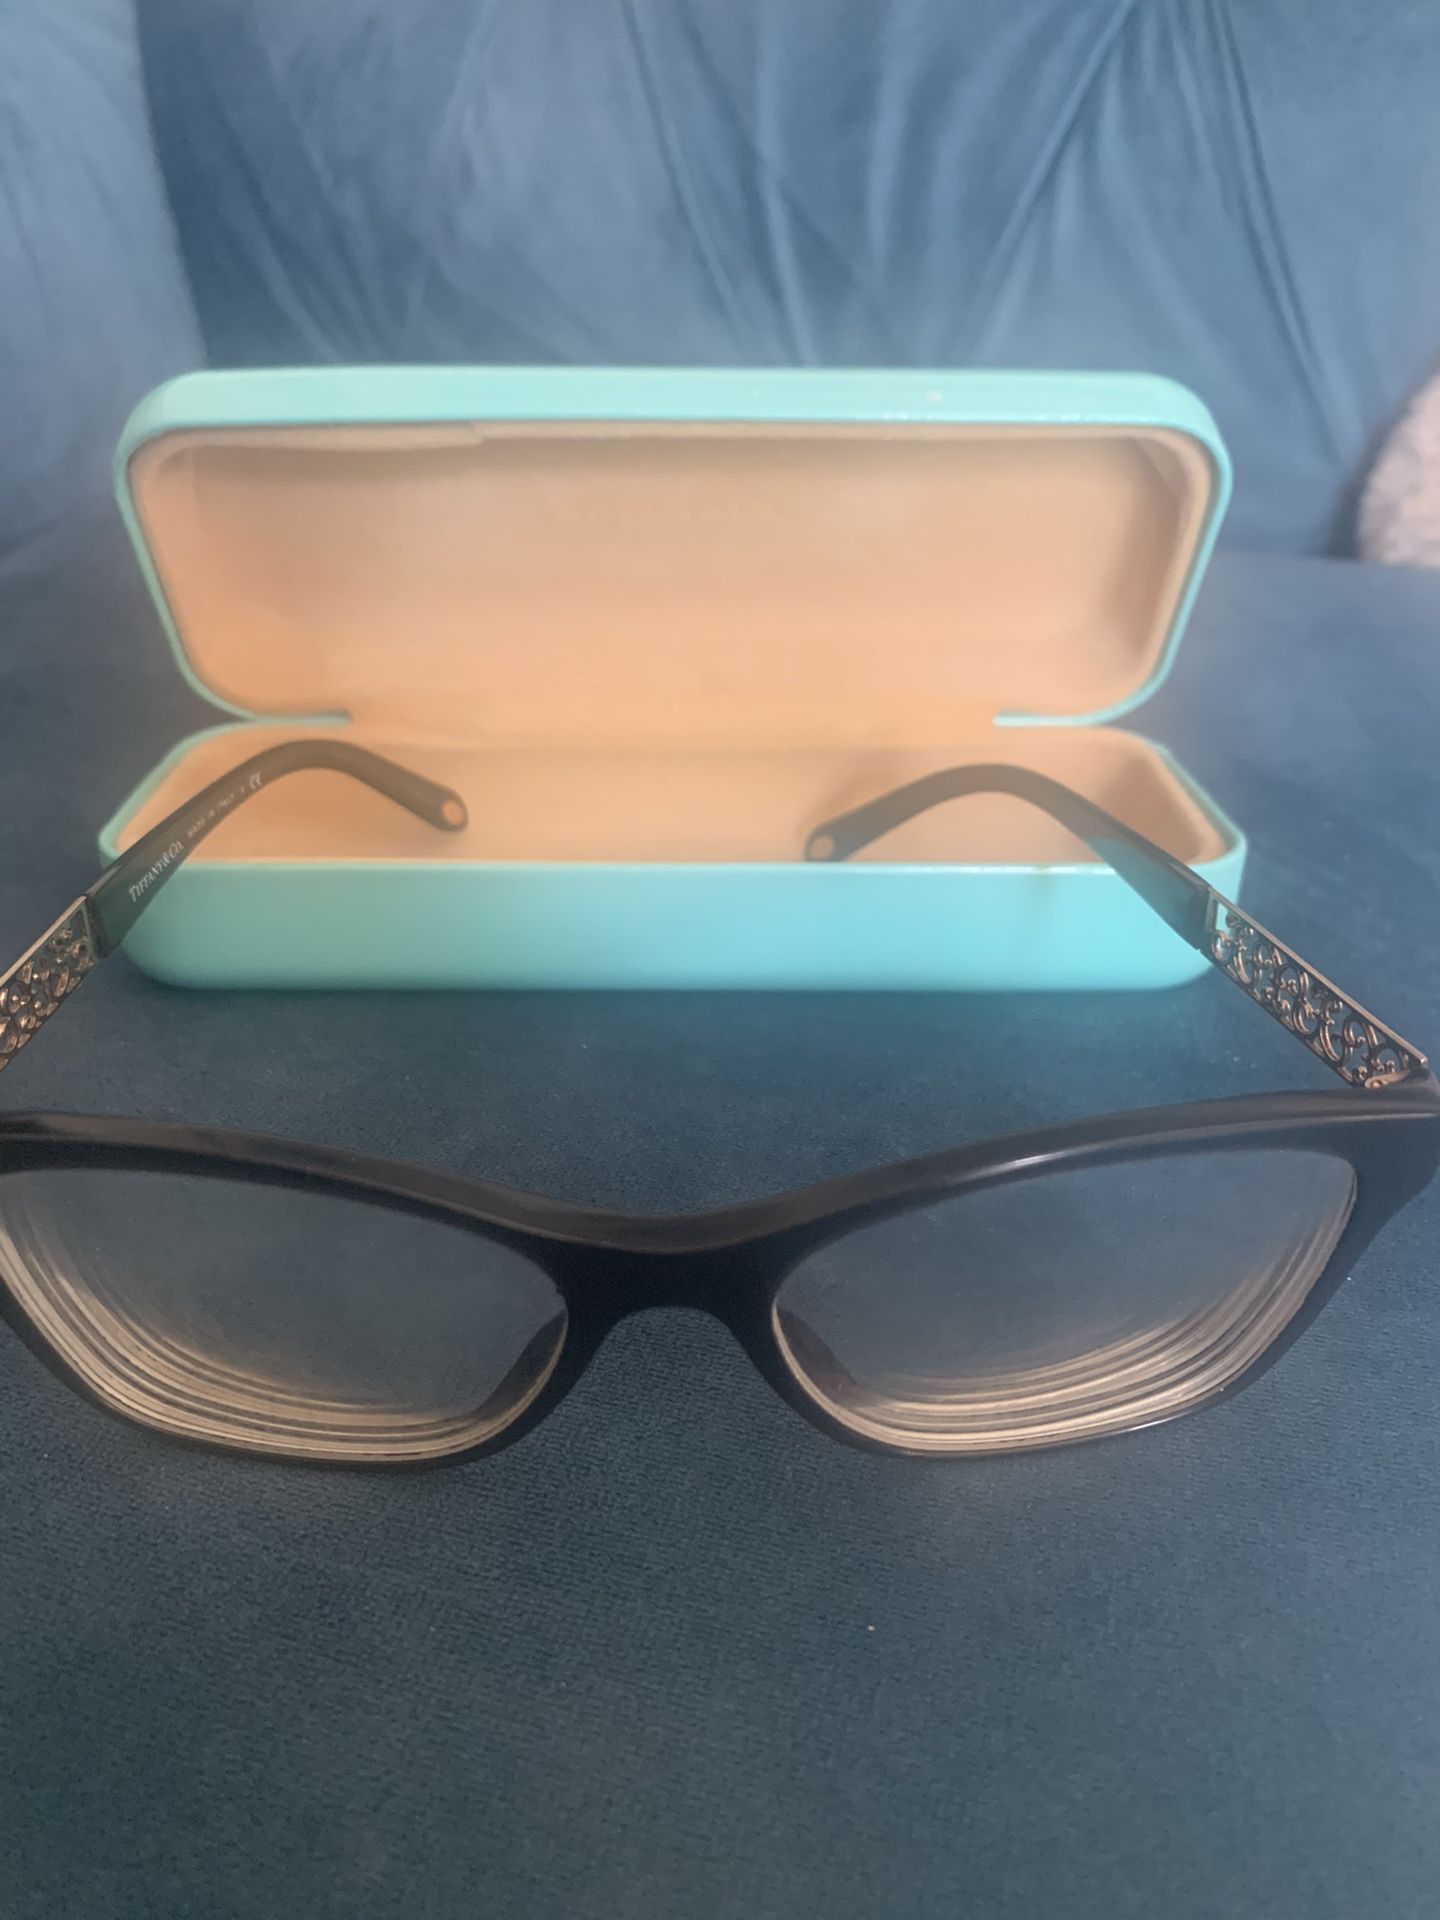 Tiffany & Co. glasses